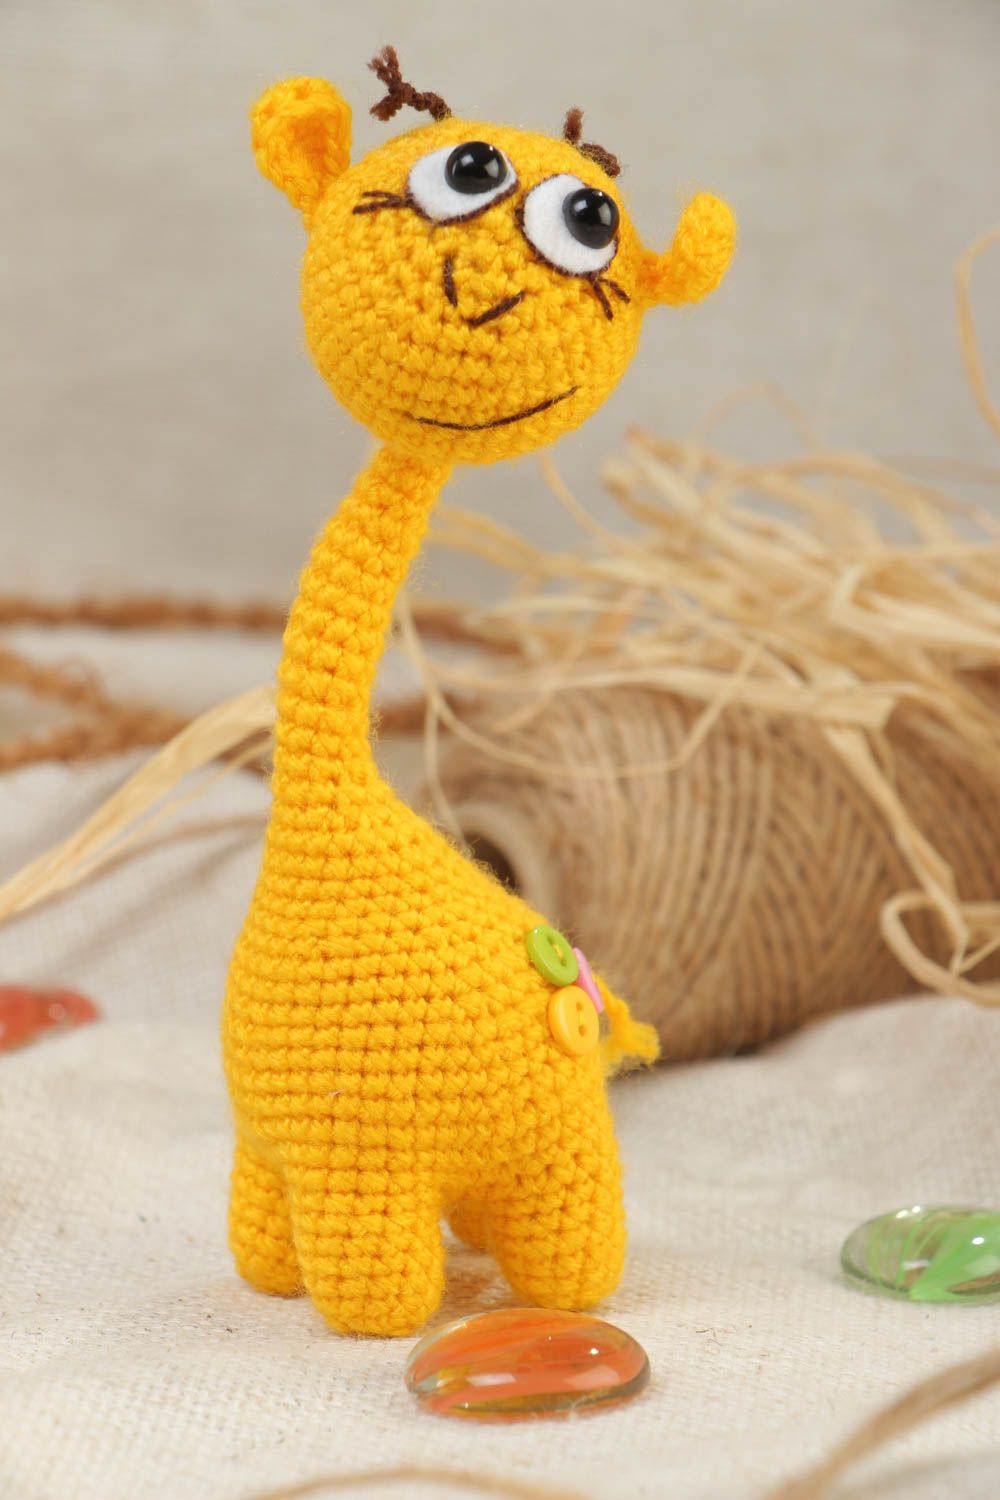 Мягкая вязаная игрушка авторская ручной работы жираф желтый на каркасе фото 1